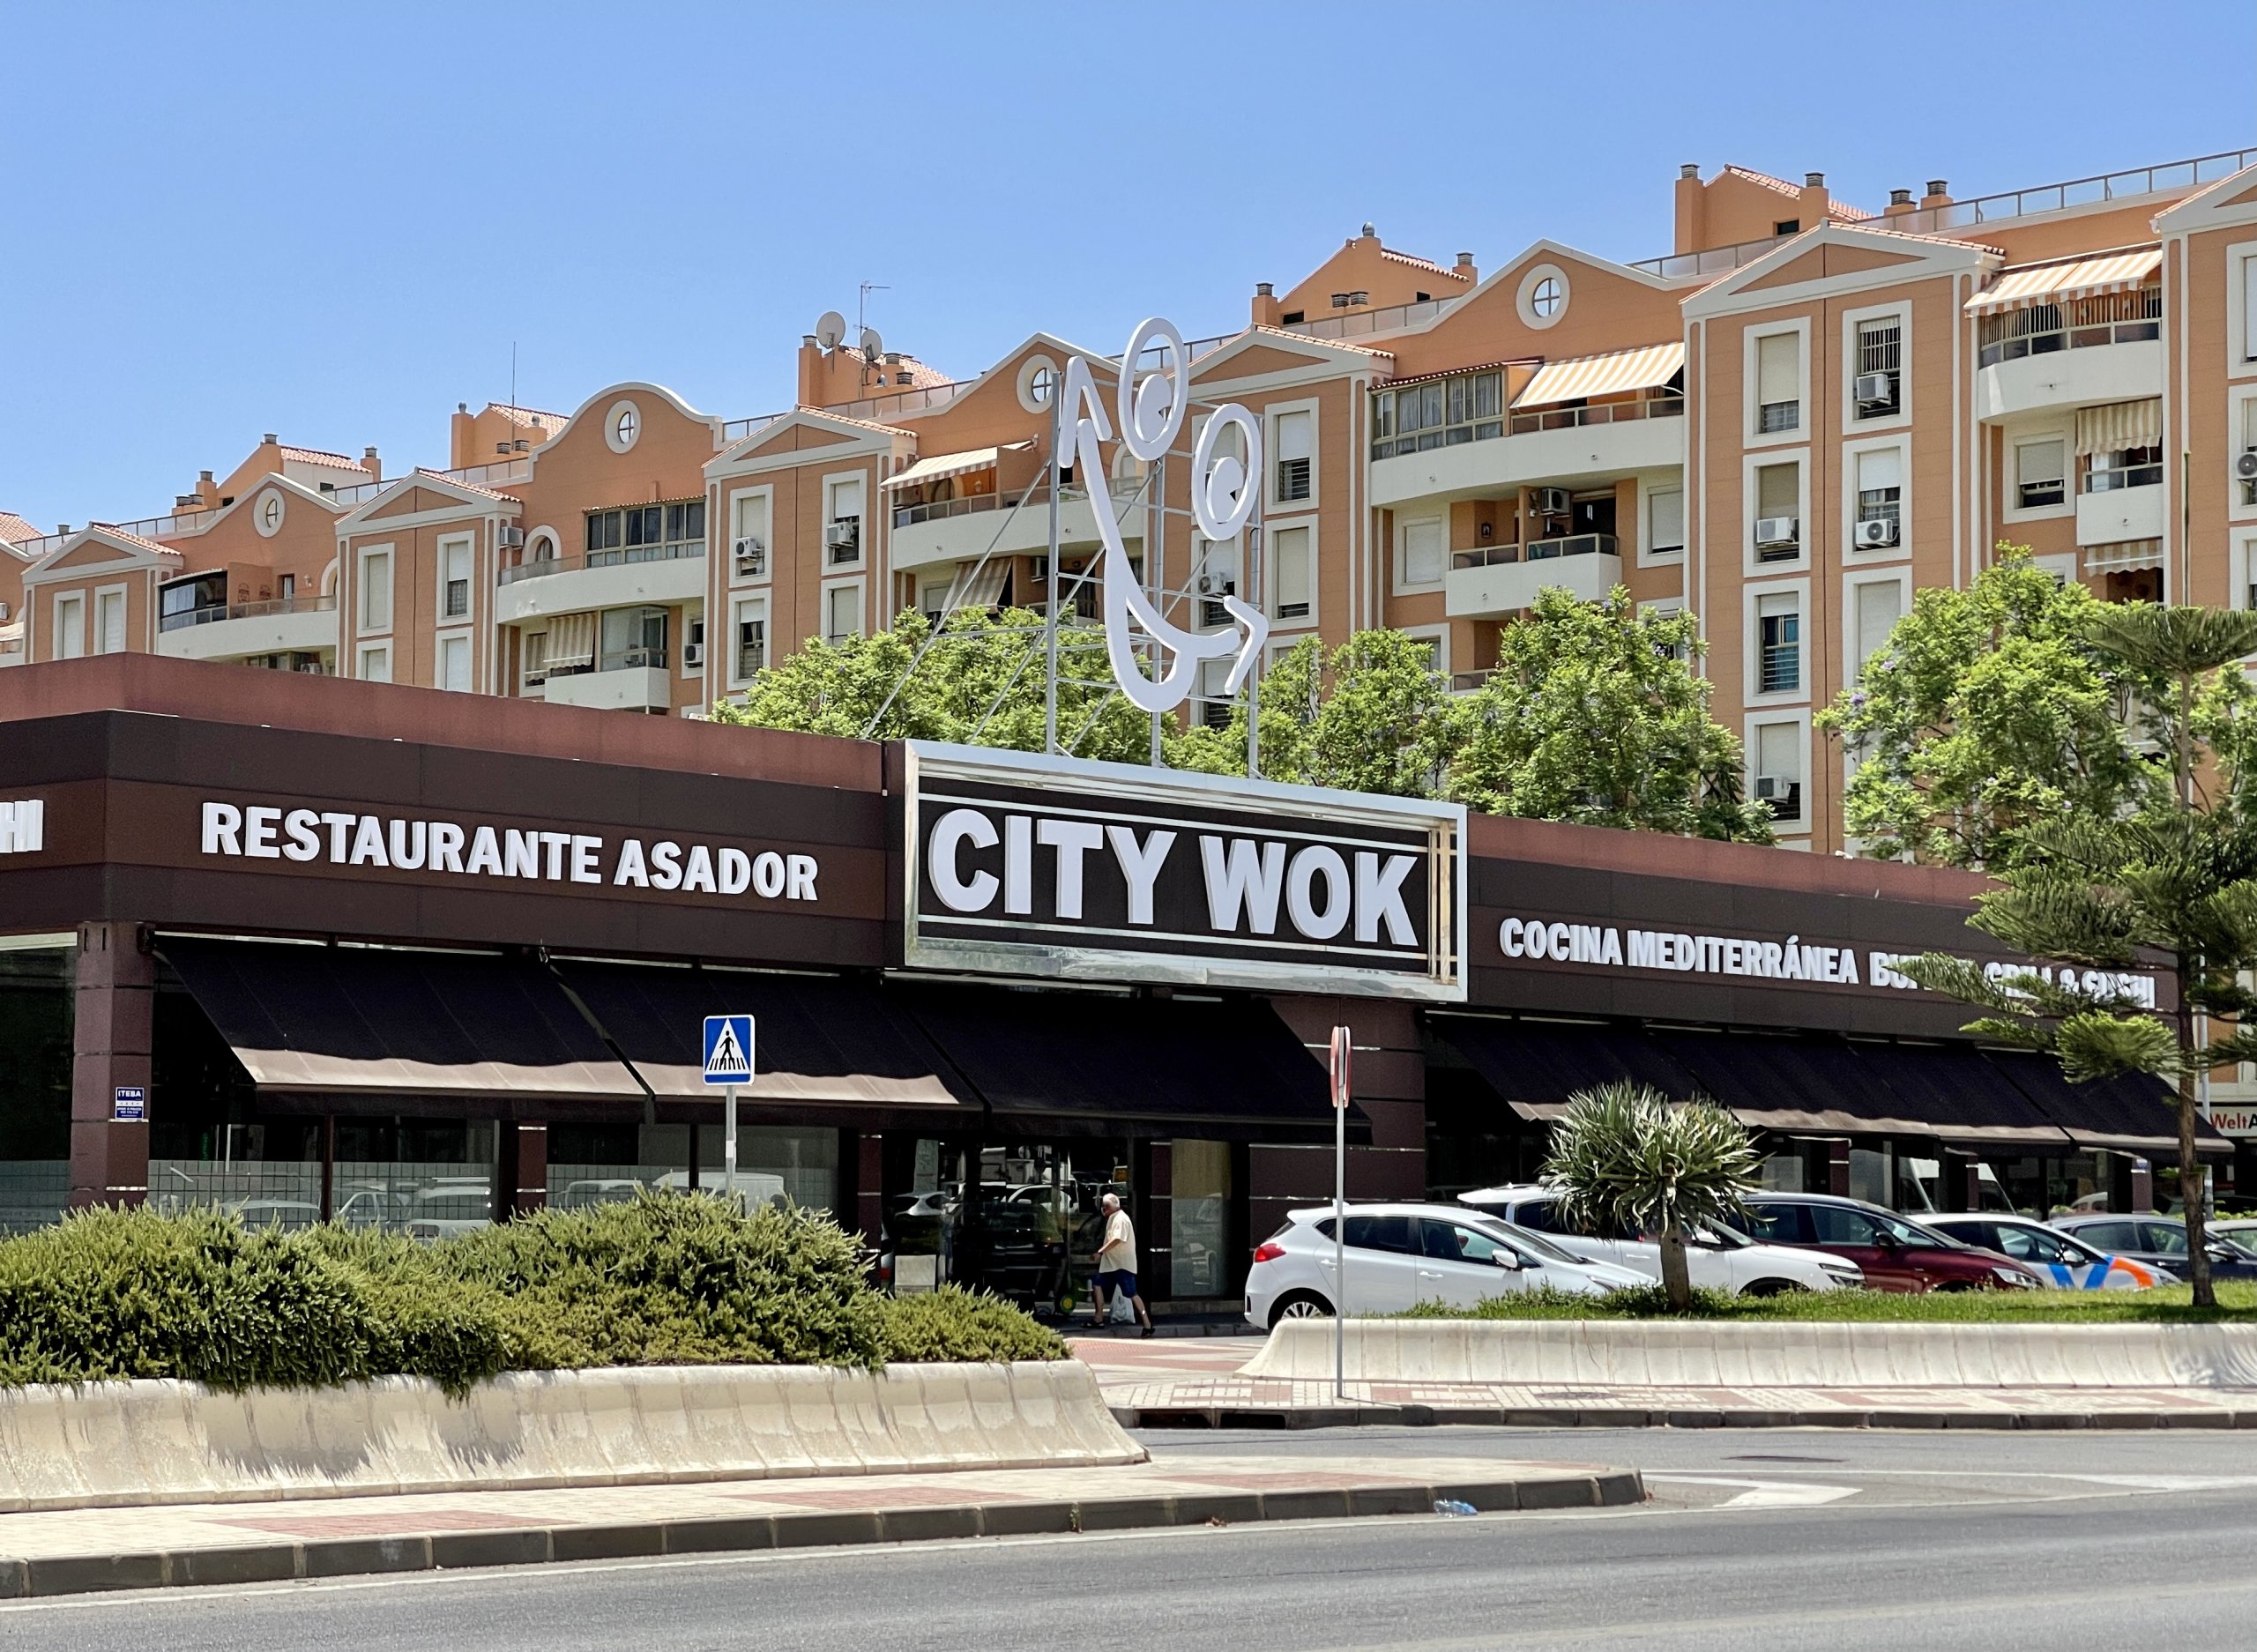 City Wok ocupa uno de los locales comerciales más grandes de Málaga, dedicado a la hostelería